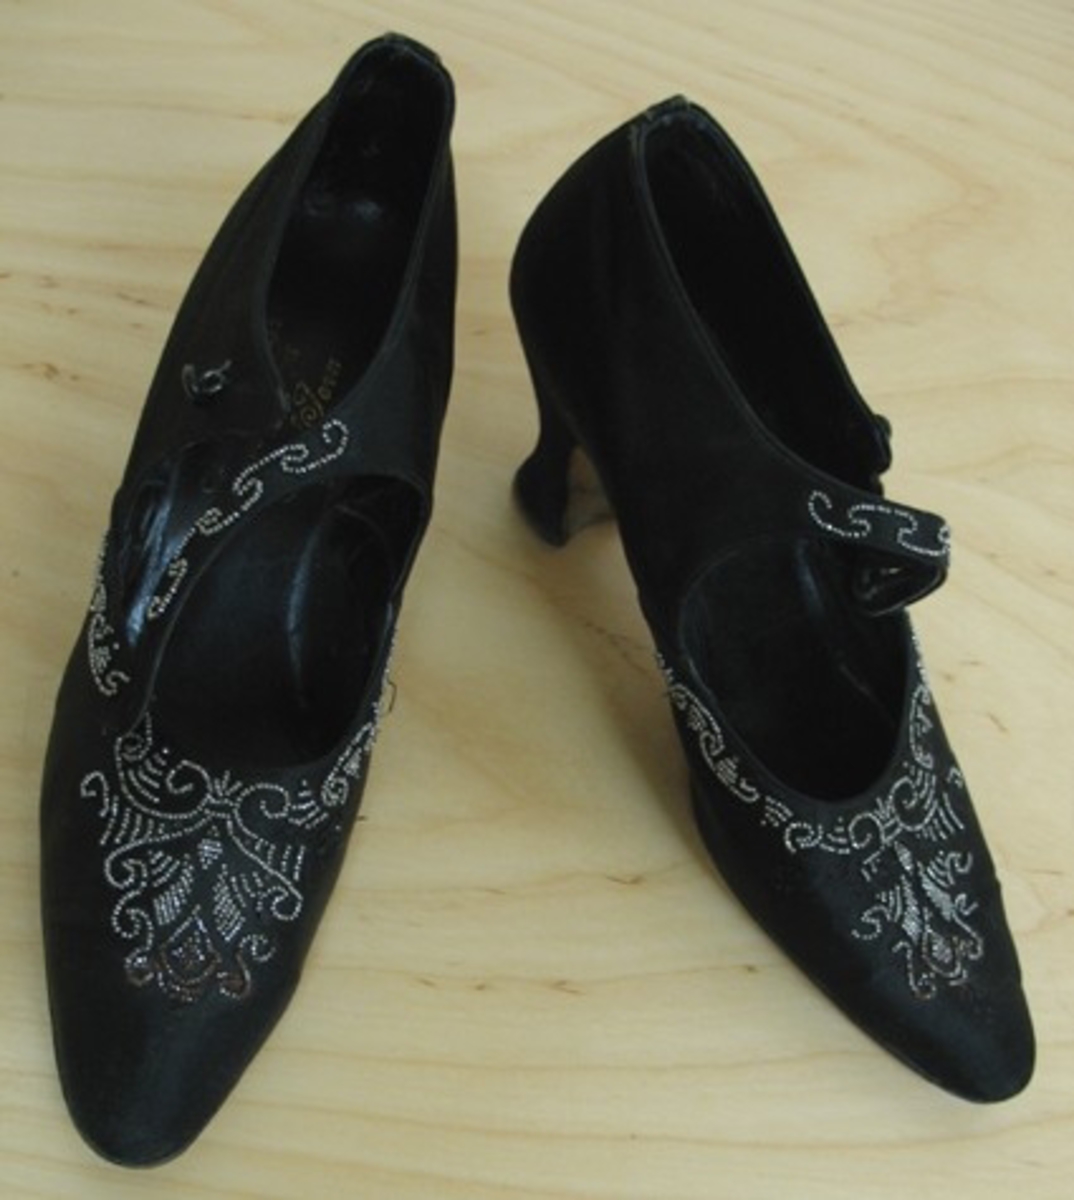 21 205:a Höger sko.
:b Vänster sko.

Skor i läder klädda med svart sammet. Skorna öppnar sig 8 cm, från tån och knäpps över foten med ett enkelt ca 1 cm, brett band som knäpps med en rundad lackad knapp.

Skorna har rika pärlbroderier i silverfärgade pärlor på tån, längs sidorna och på bandet.

Skorna är invändigt märkta ''Chaussures de Luxe Importées par Carl Jern Stockholm''. Undertill är de märkta ''E Import, 730, 36, 5''. Enligt uppgift är de inköpta på 1930-talet.

Givaren var bosatt i Skara 1938-1958.